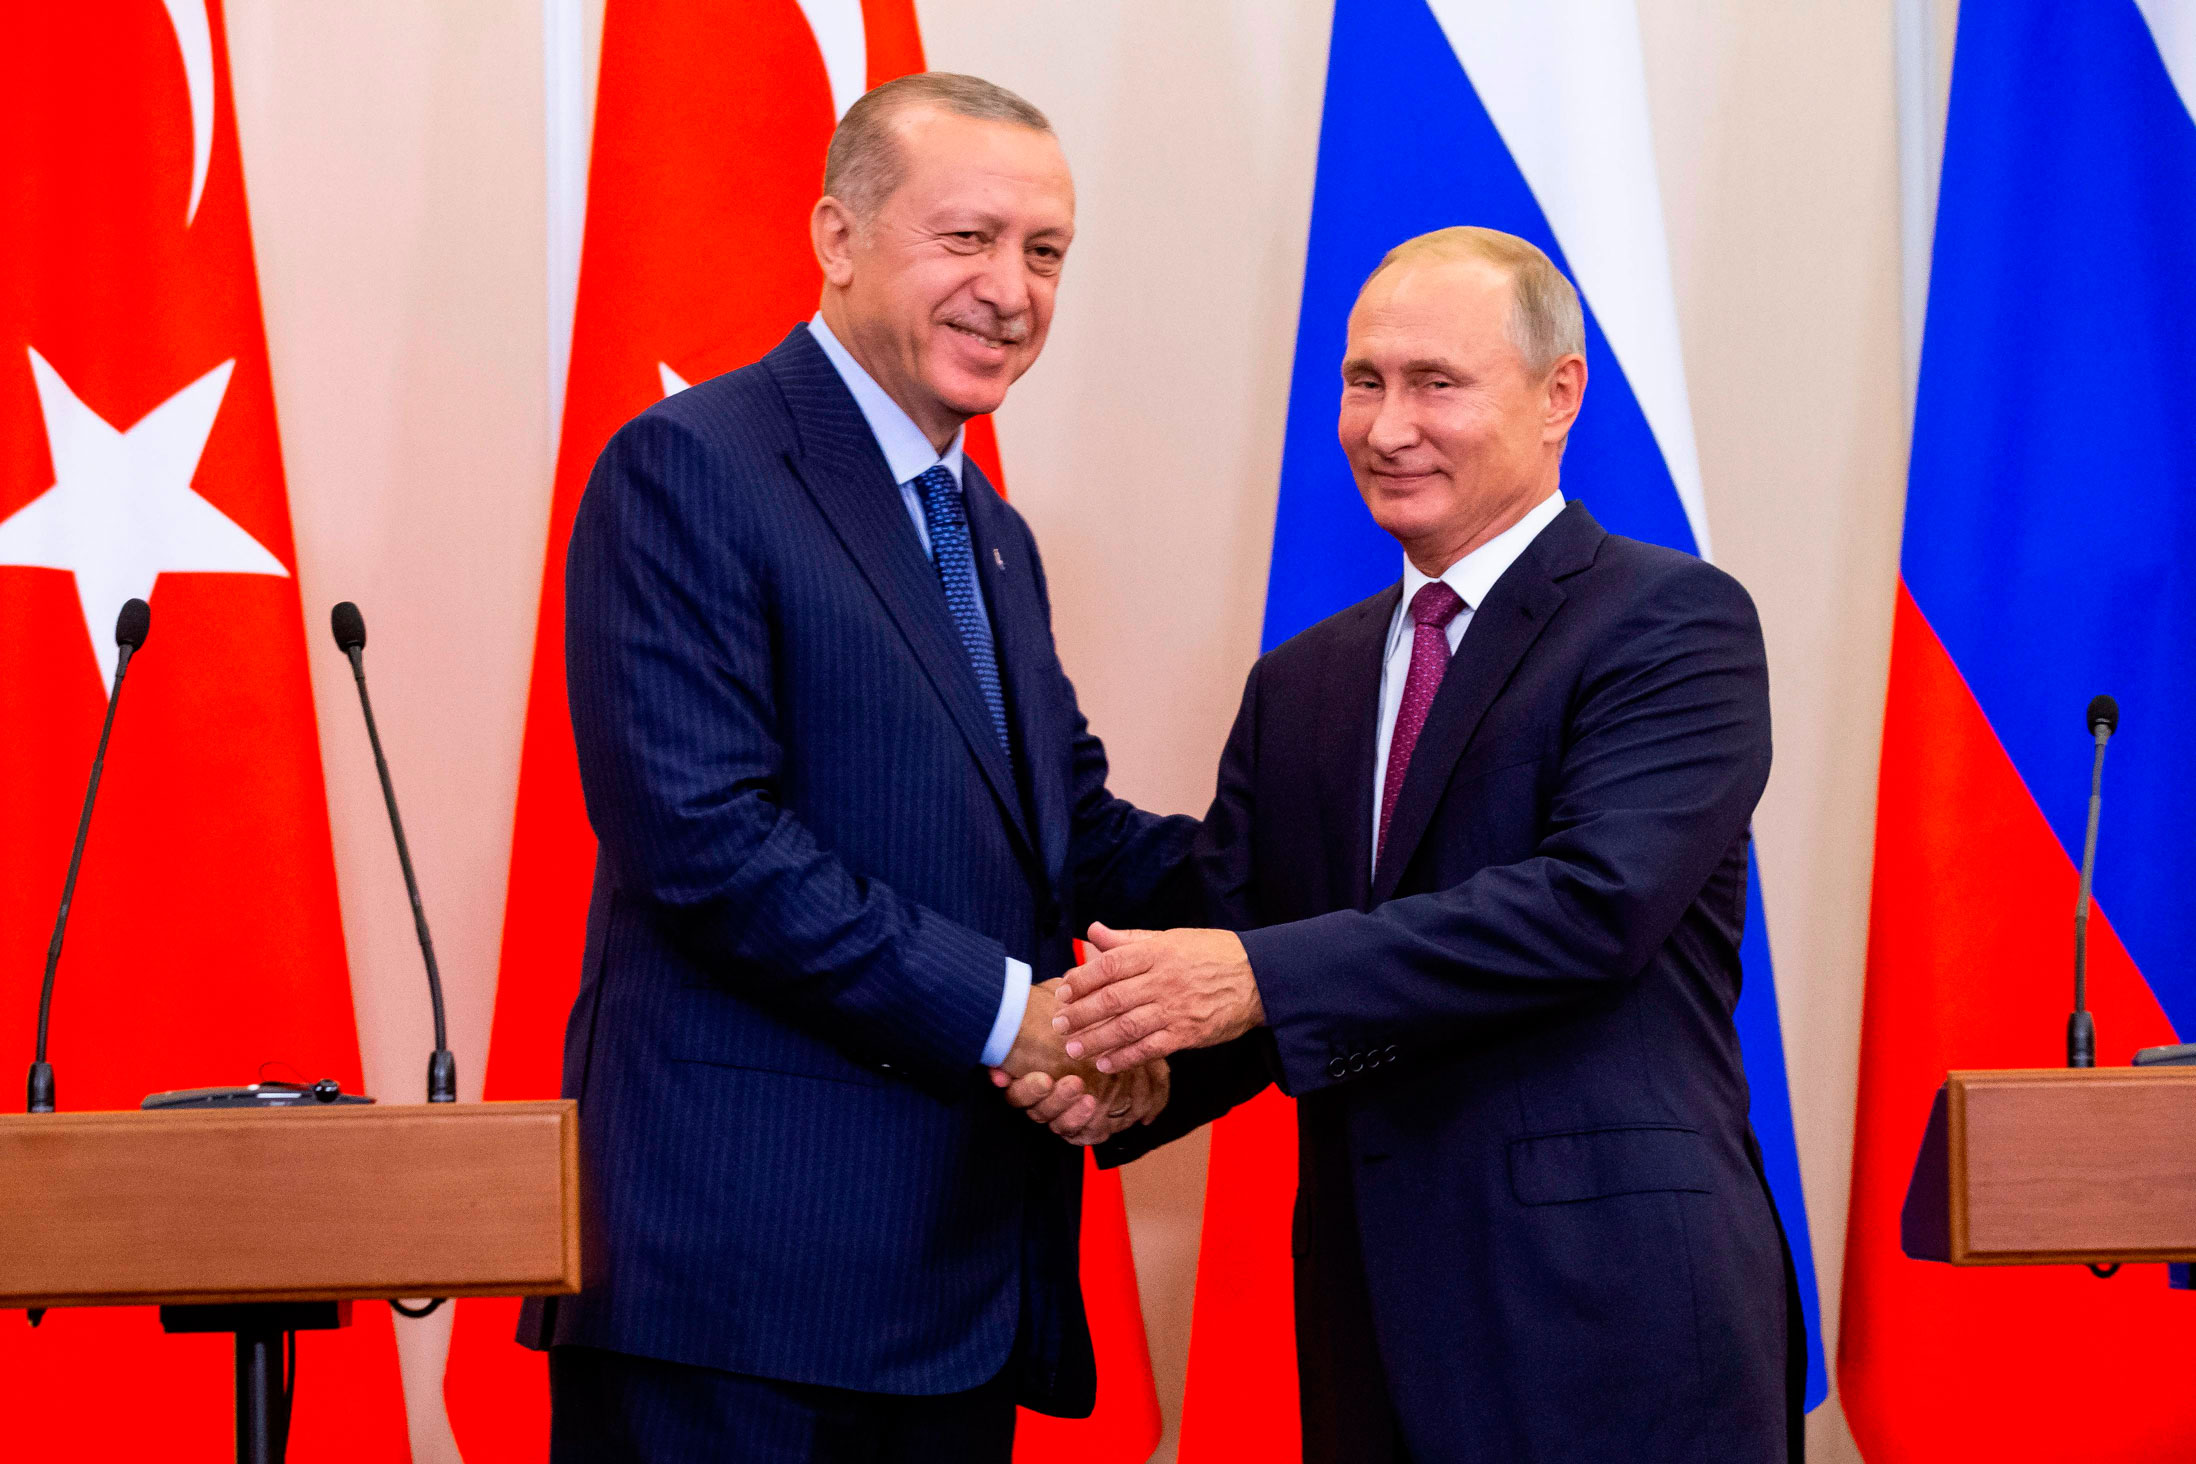 الرئيسان الروسي فلاديمير بوتين والتركي رجب طيب اردوغان جنبا ادلب هجوما كاسحا لكن الهدنة قد تنهار سريعا